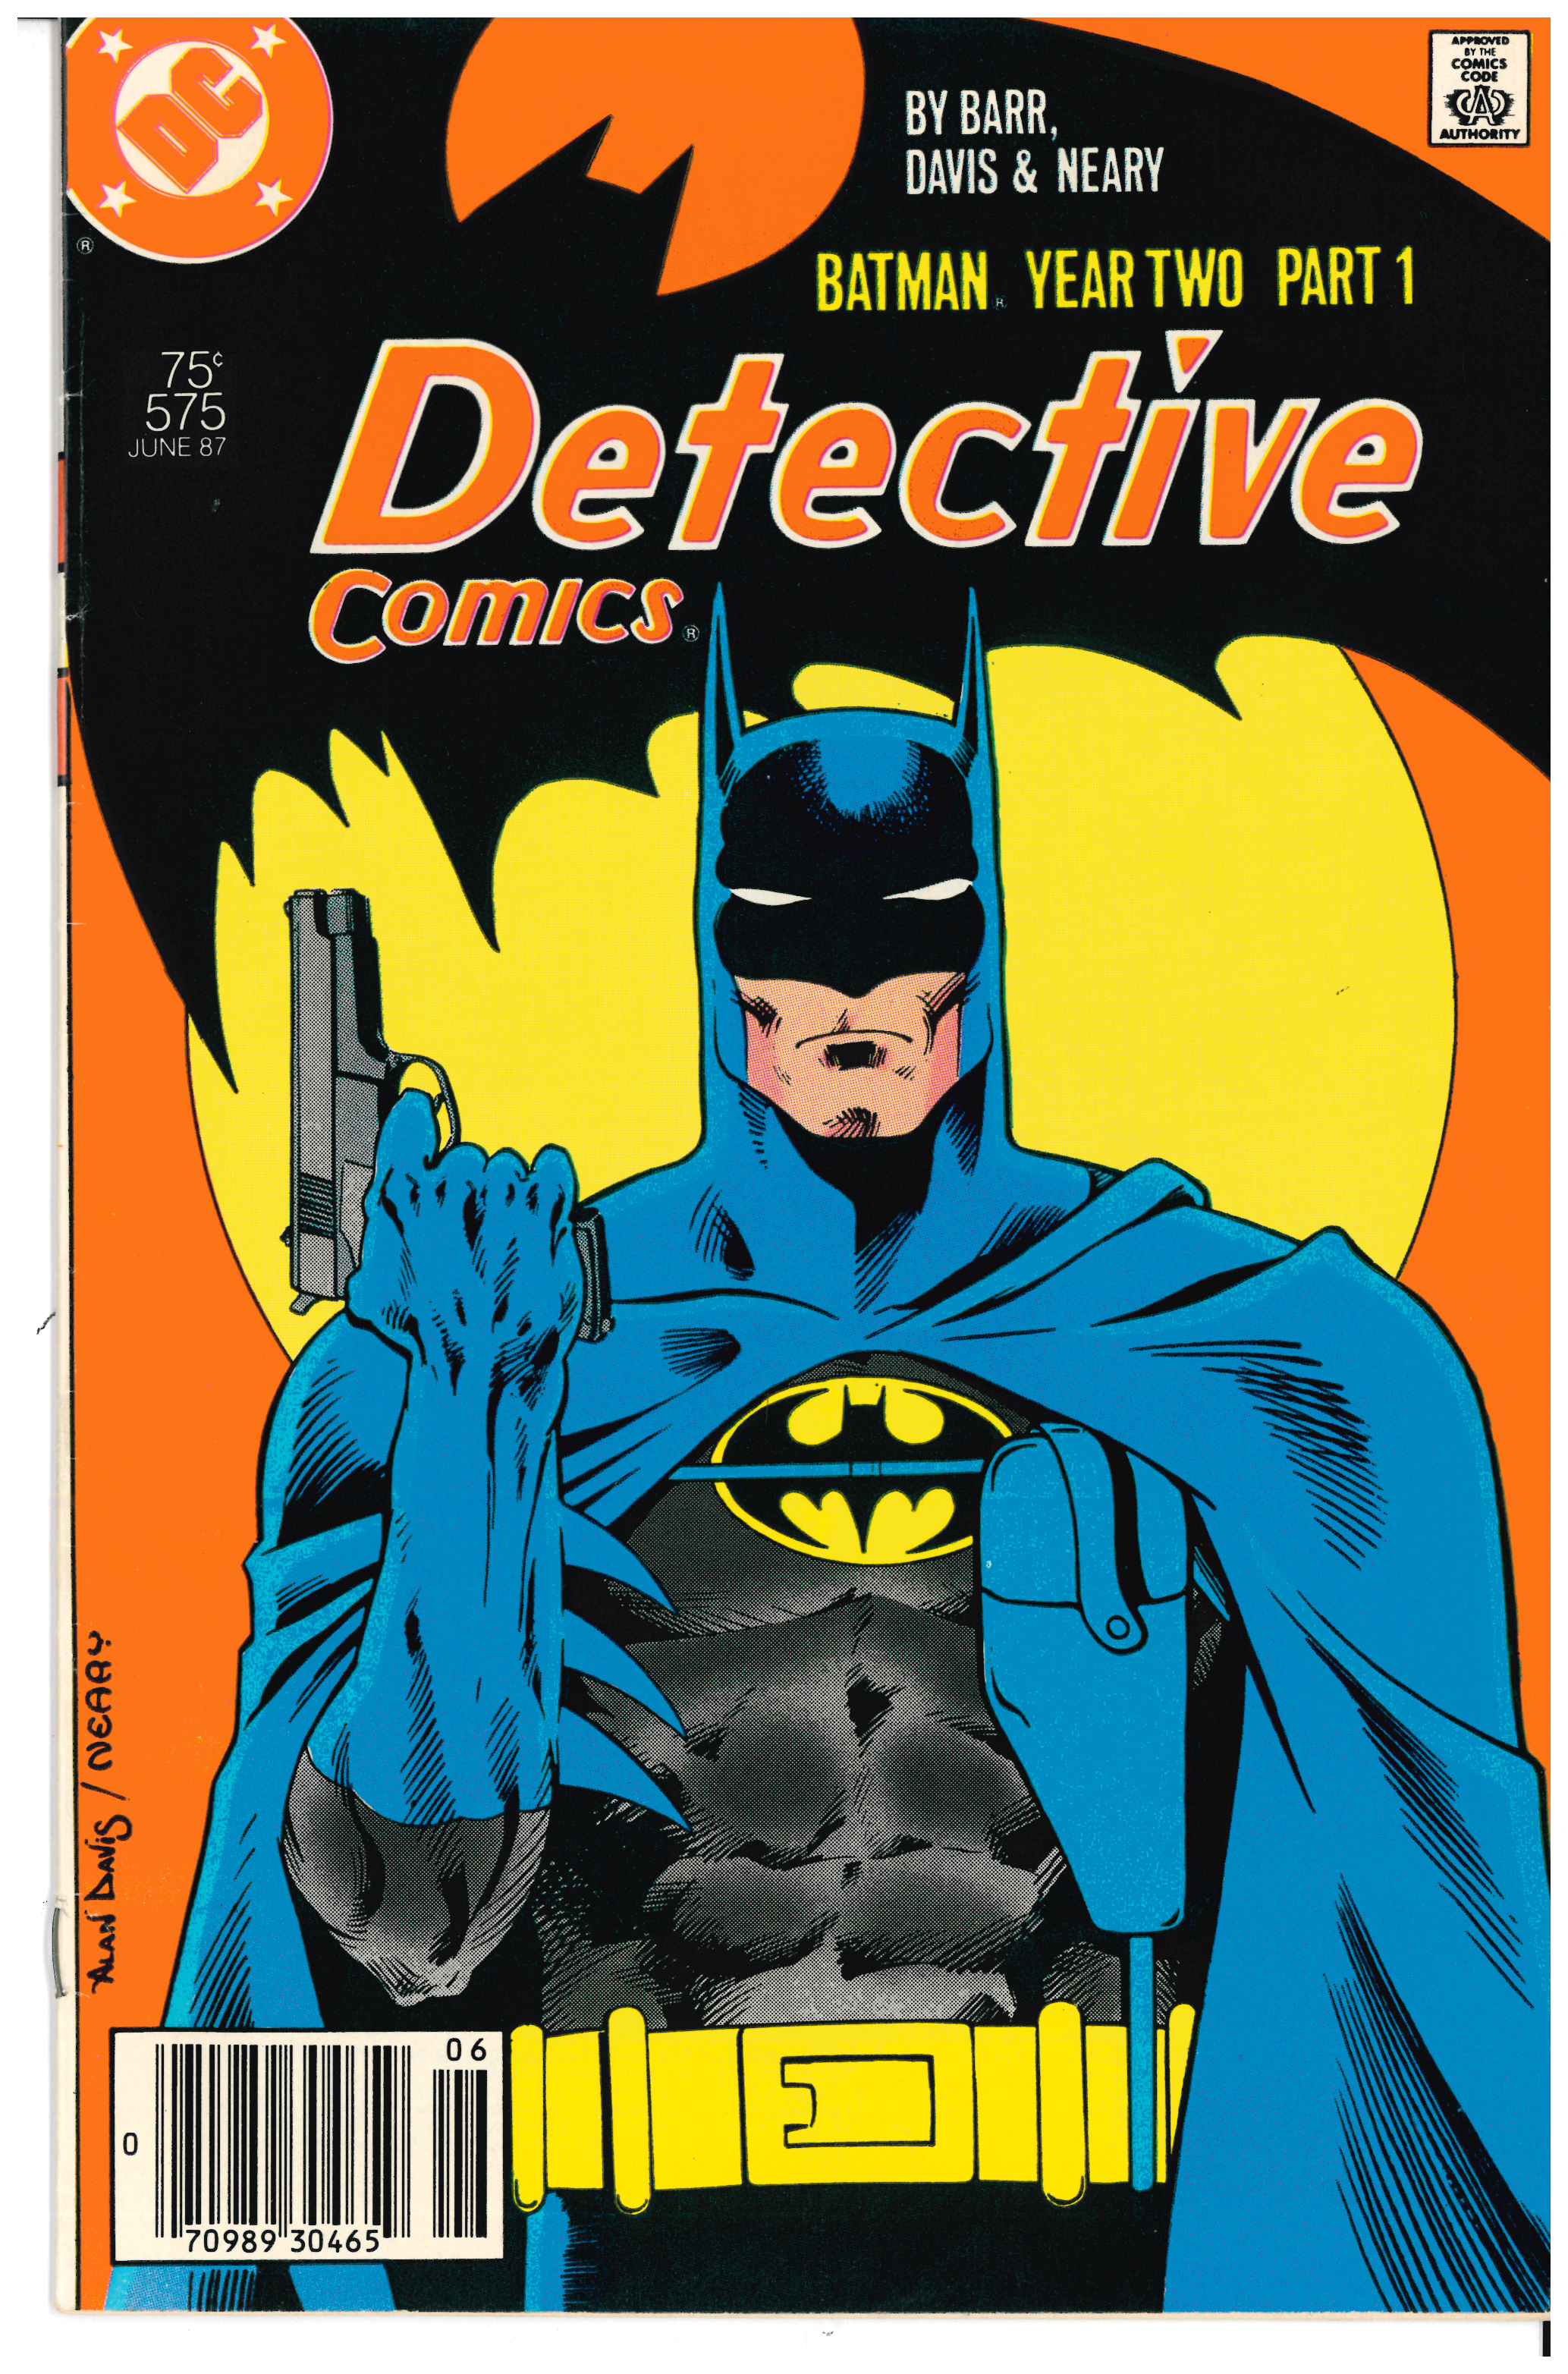 Detective Comics #575